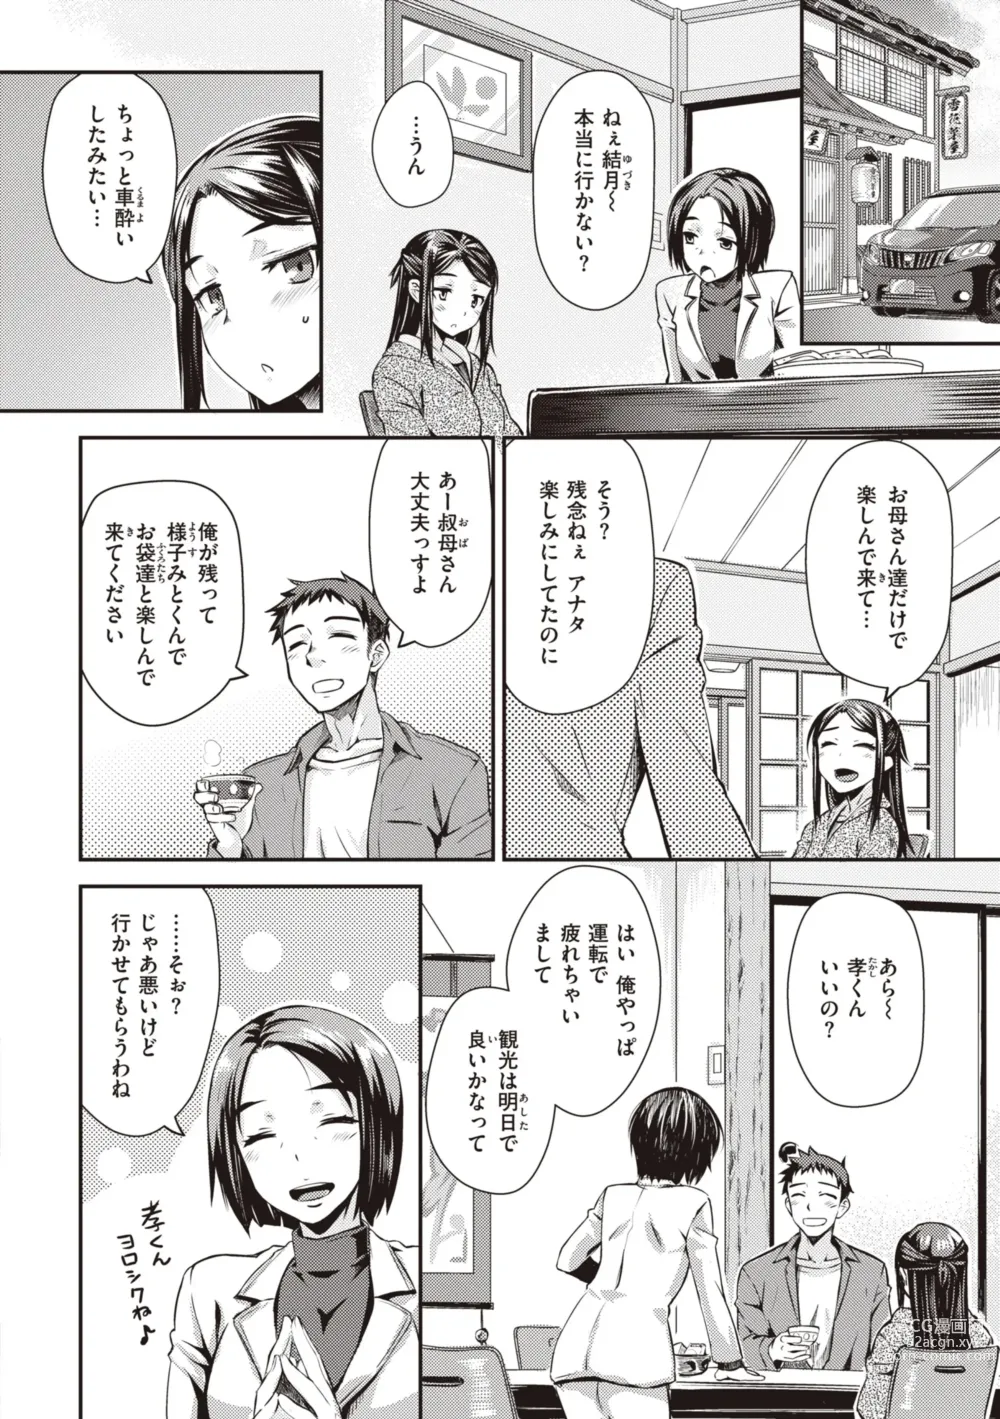 Page 6 of manga Ubukakushi